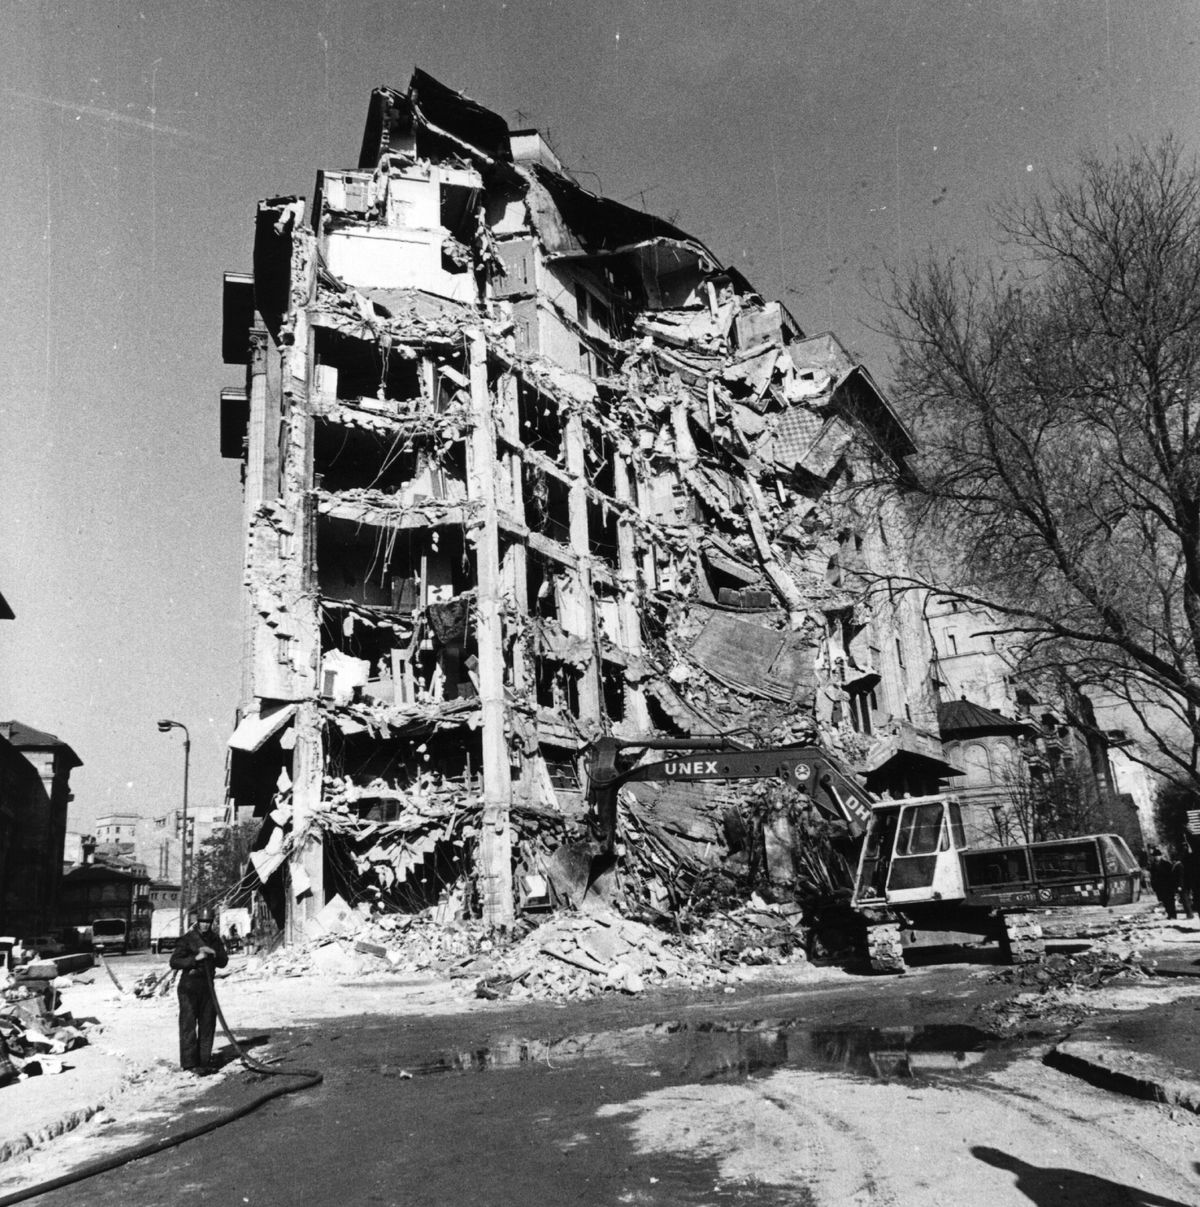 EXCLUSIV Atleta olimpică plecată din România în State a povestit experiența traumatizantă de la cutremurul din '77: „Tot pământul s-a lichefiat, aproape că am fost îngropați în cărămizi!”